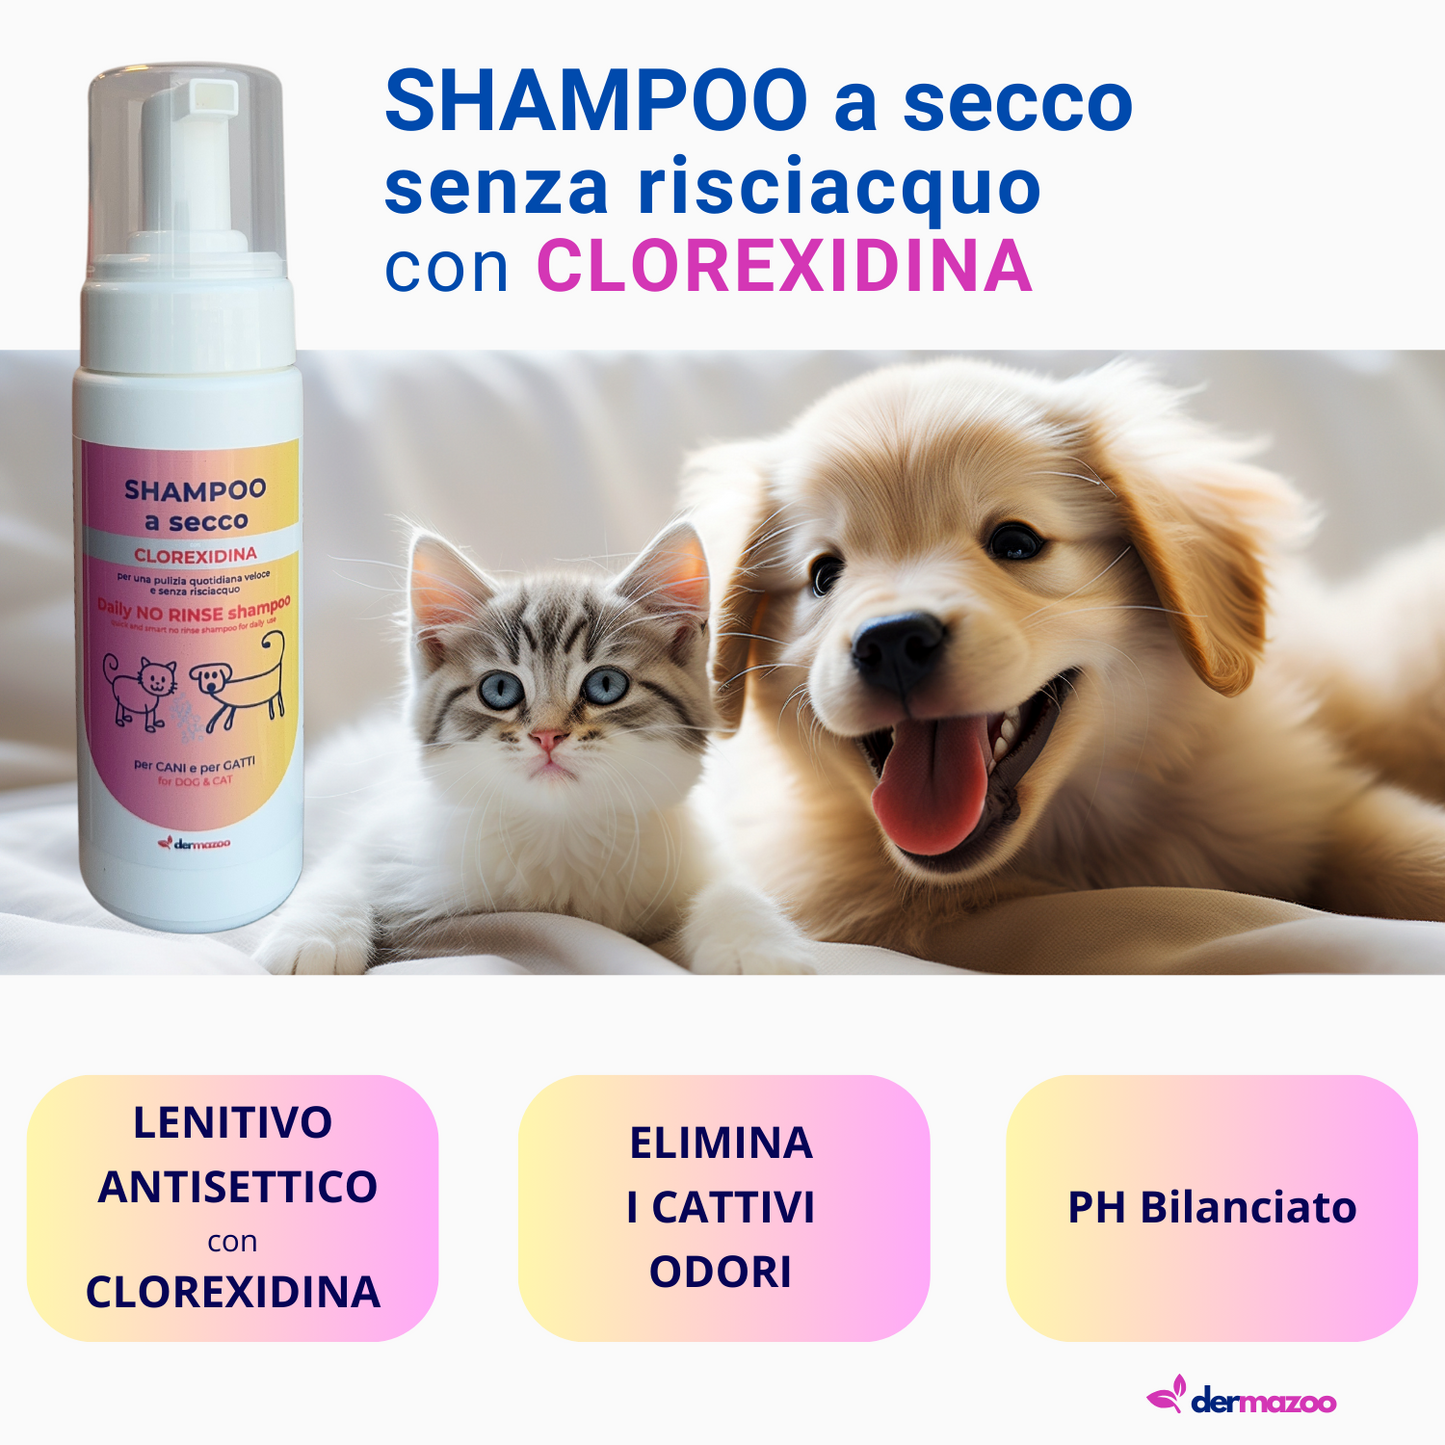 Shampoo a secco con Clorexidina " .. 190 ml di mousse per lavaggio veloce e senza risciacquo "